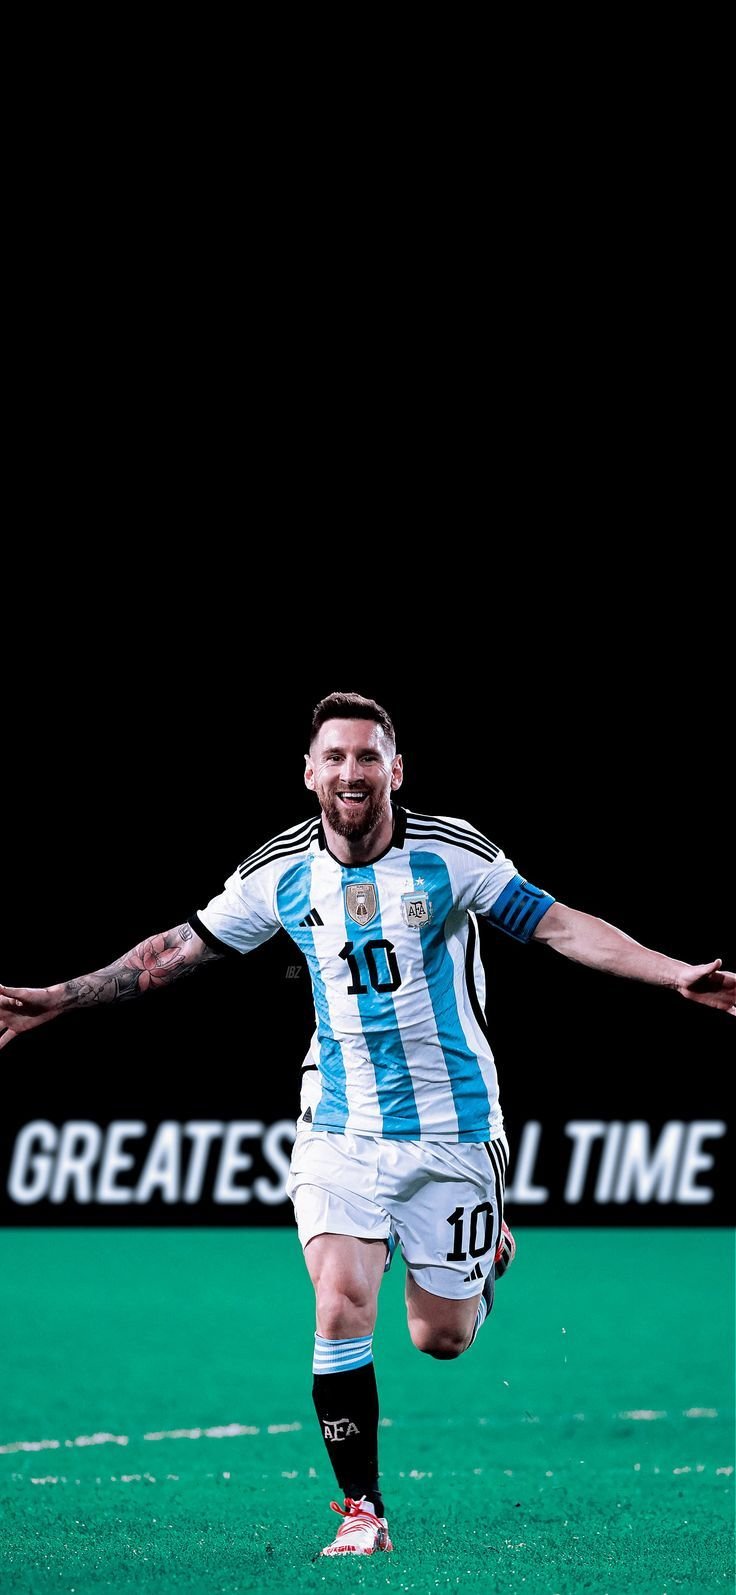 Leonal Messi Wallpaper HD